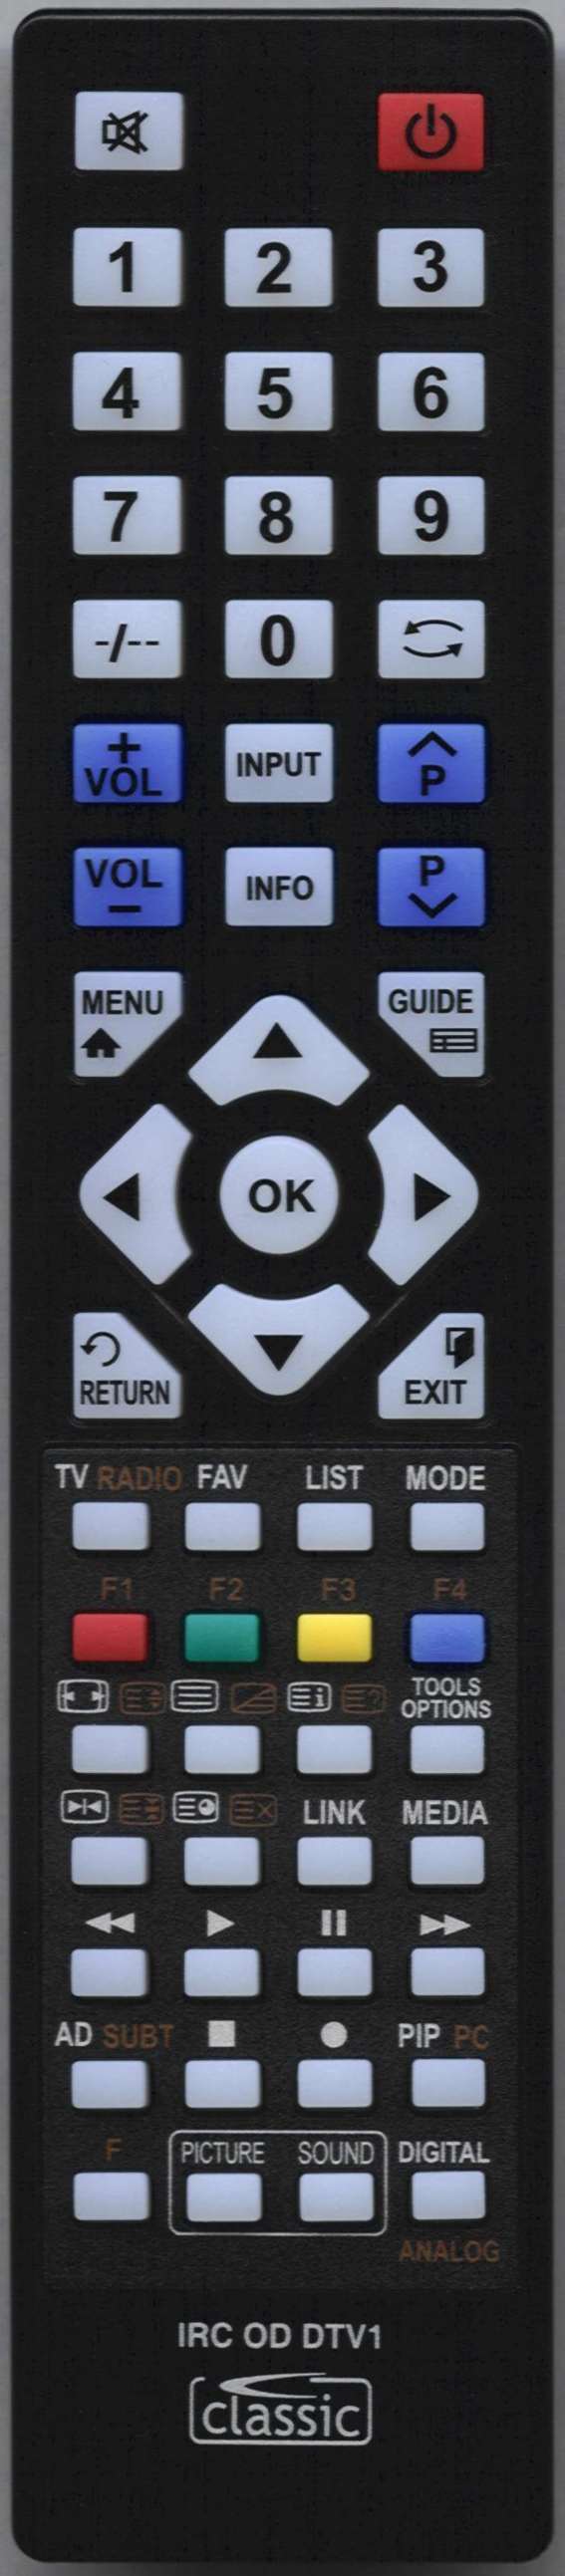 LG 43UN700-B Remote Control Alternative 